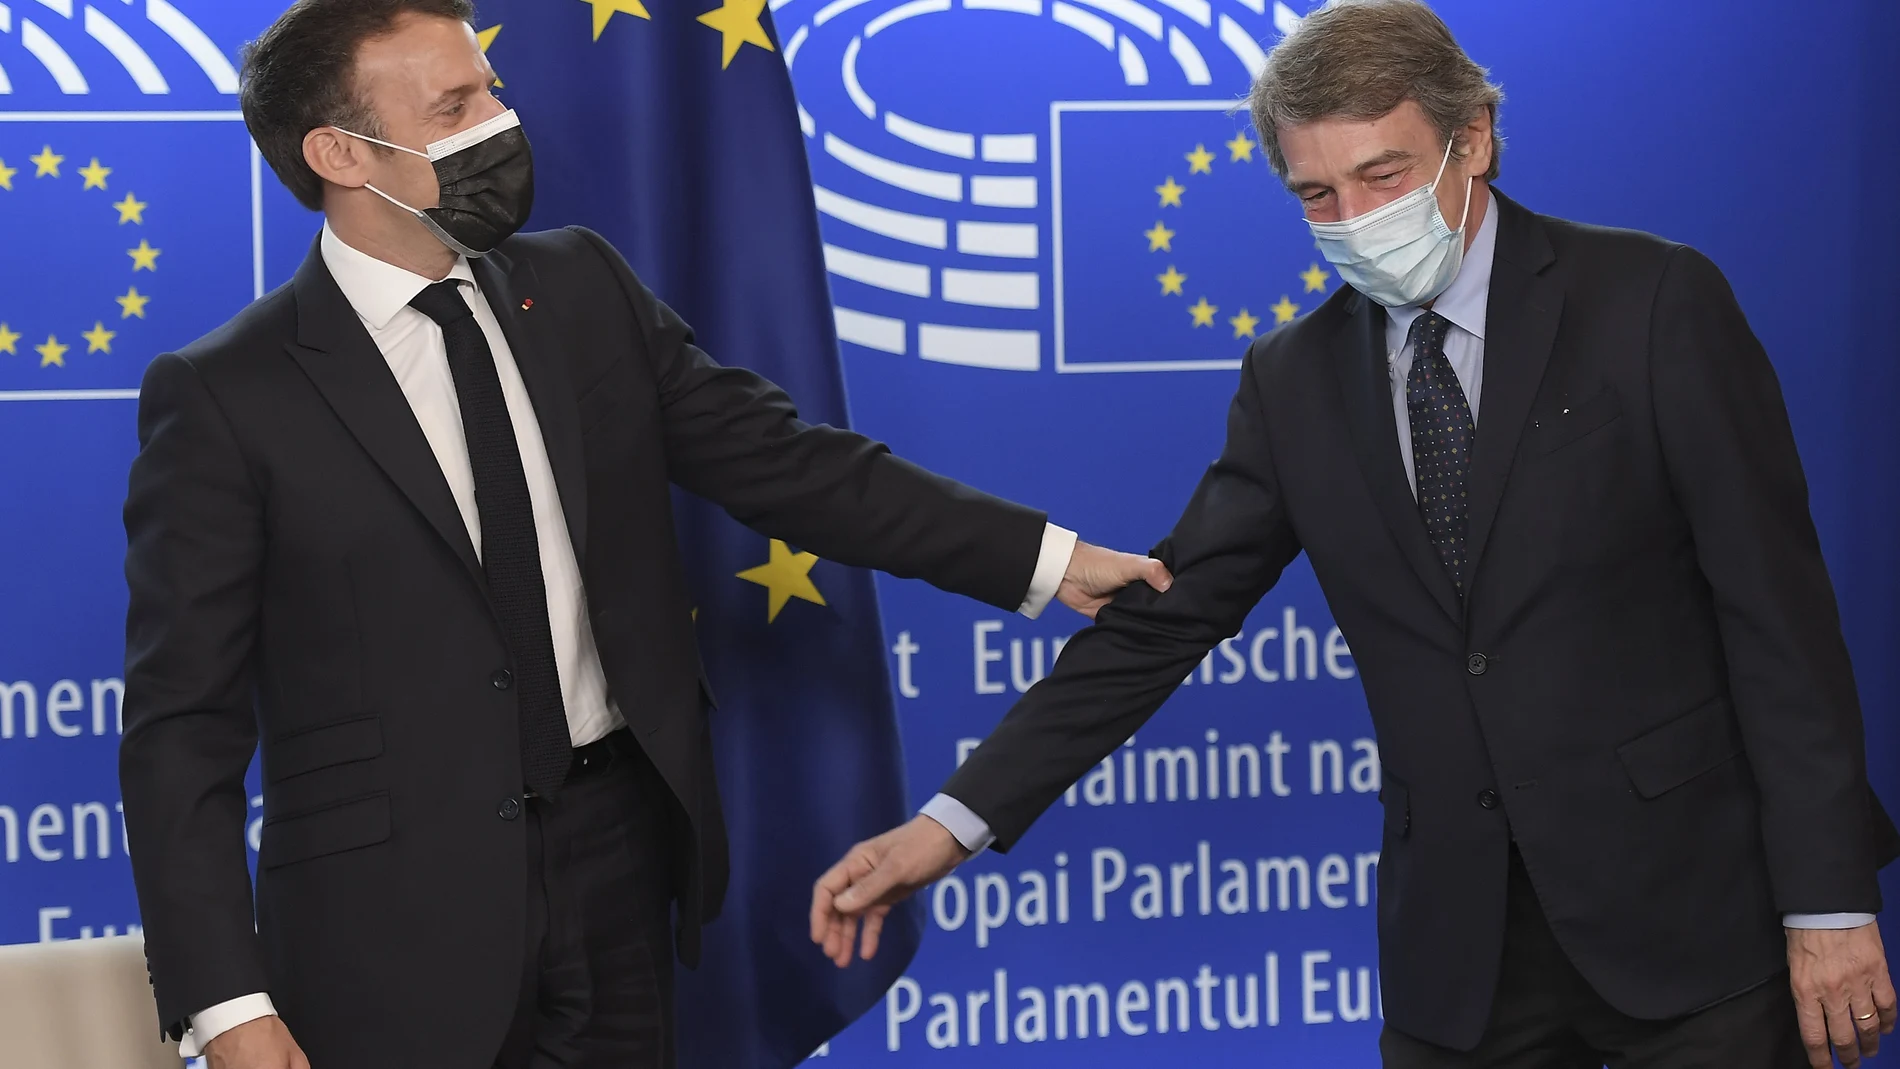 El presidente francés, Emmanuel Macron, a la izquierda, sostiene el brazo del presidente del Parlamento Europeo, David Sassoli, durante el evento del Día de Europa y la Conferencia sobre el Futuro de Europa, el domingo 9 de mayo de 2021 en el Parlamento Europeo en Estrasburgo, este de Francia. (Frederick Florin, Pool vía AP)